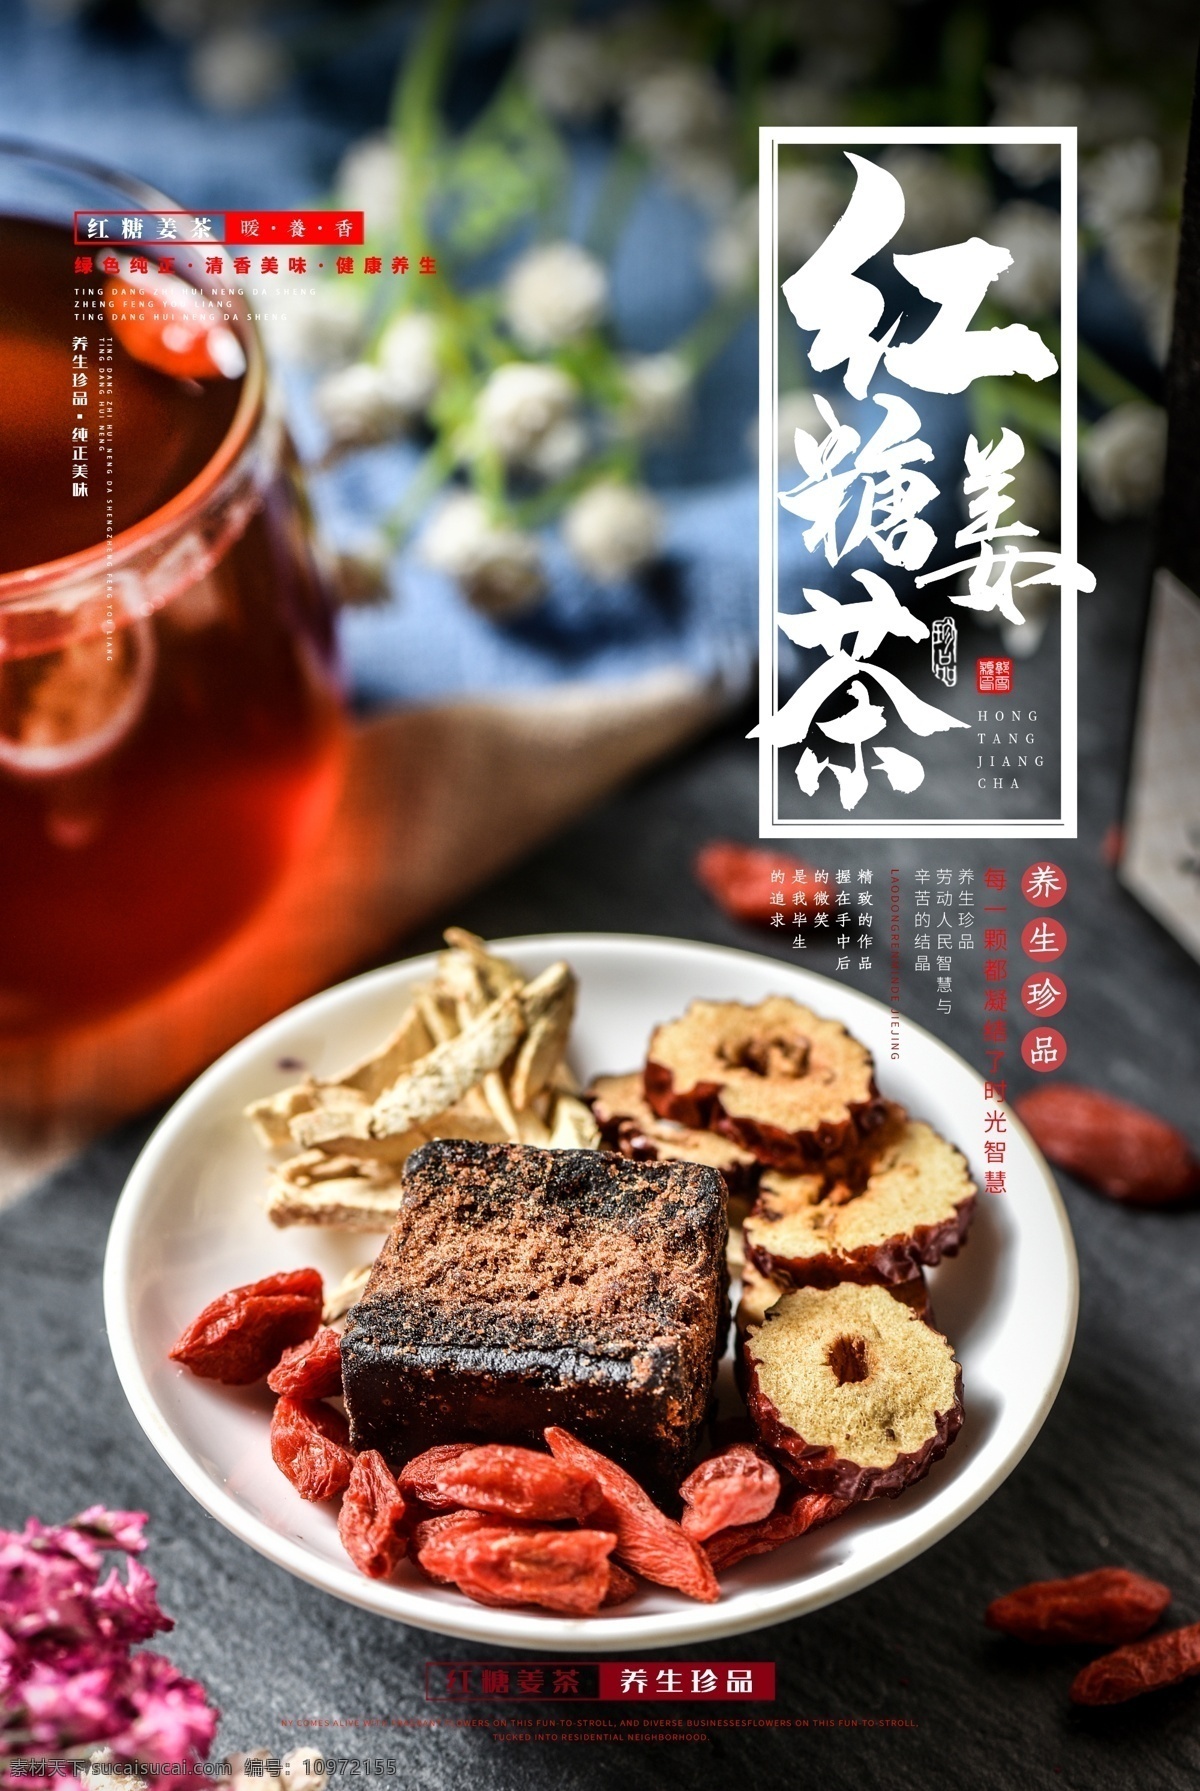 红糖 姜 茶 饮品 活动 宣传海报 红糖姜茶 宣传 海报 饮料 甜品 类